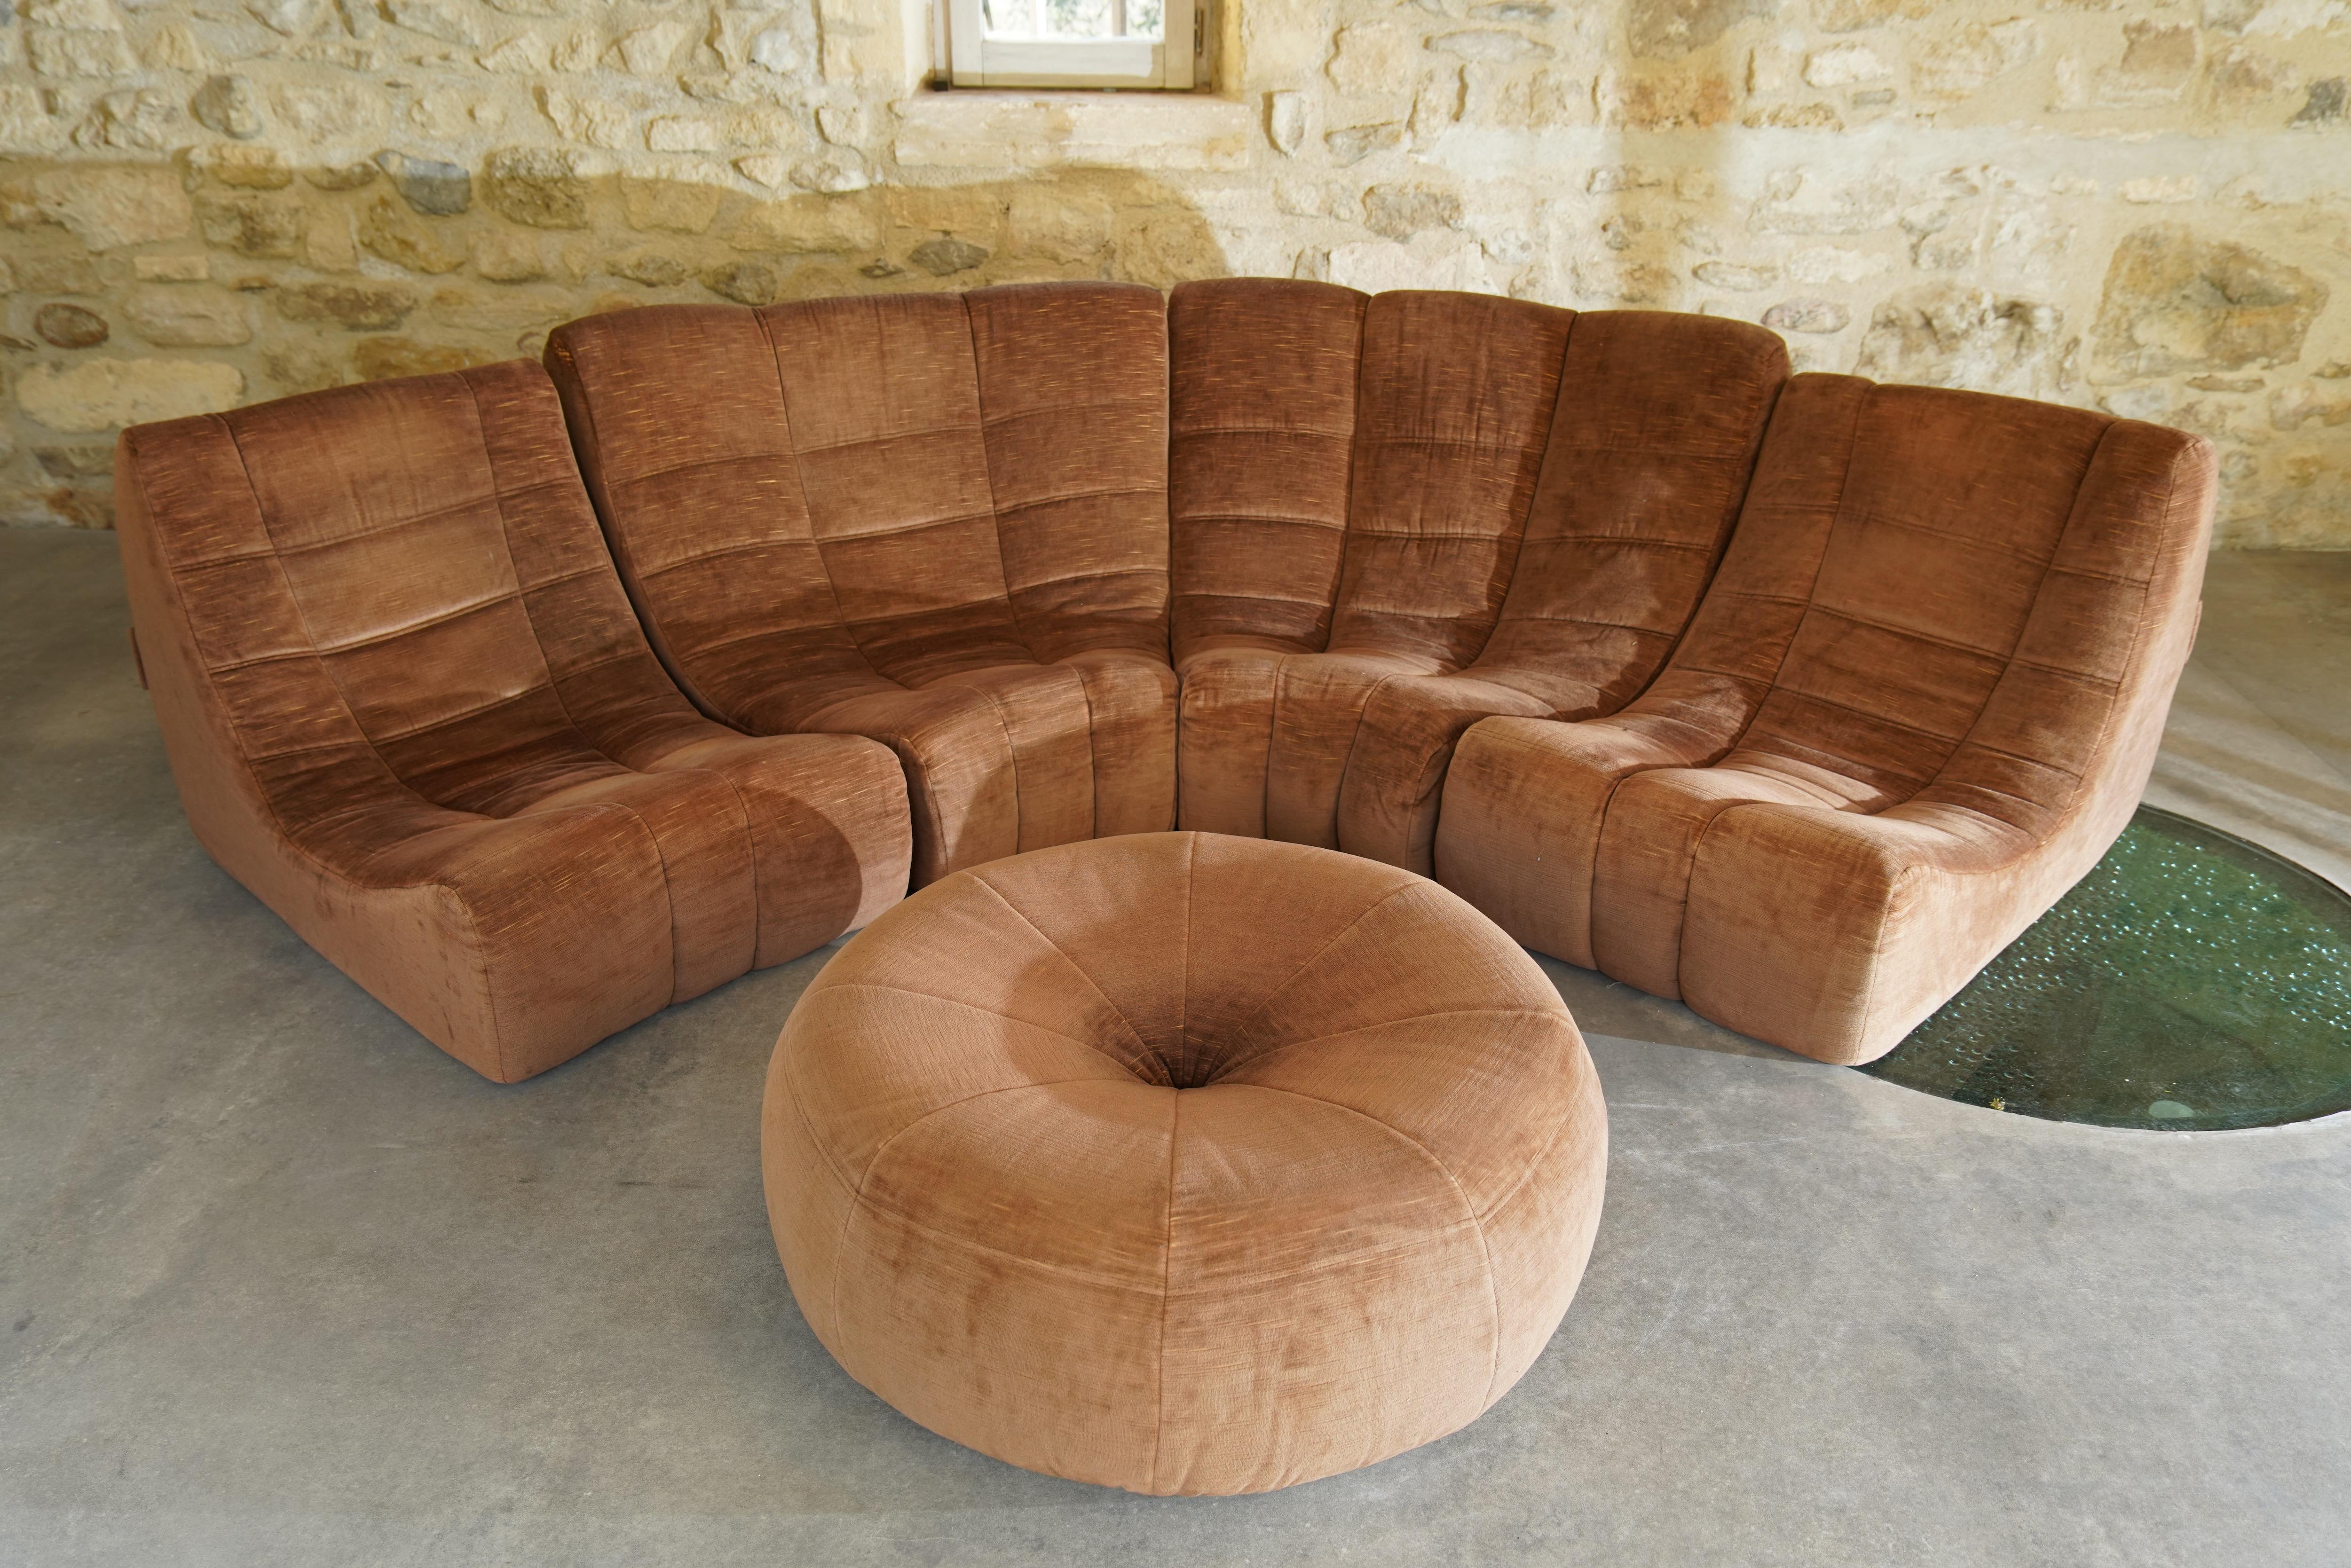 Rare canapé et ottoman 'Gilda' conçu par Michel Ducaroy pour Ligne Roset en velours brun. L'ensemble comprend 4 chaises reliées entre elles et un ottoman, rarement vu, en tissu assorti.

Le canapé Gilda, composé de confortables modules incurvés, est